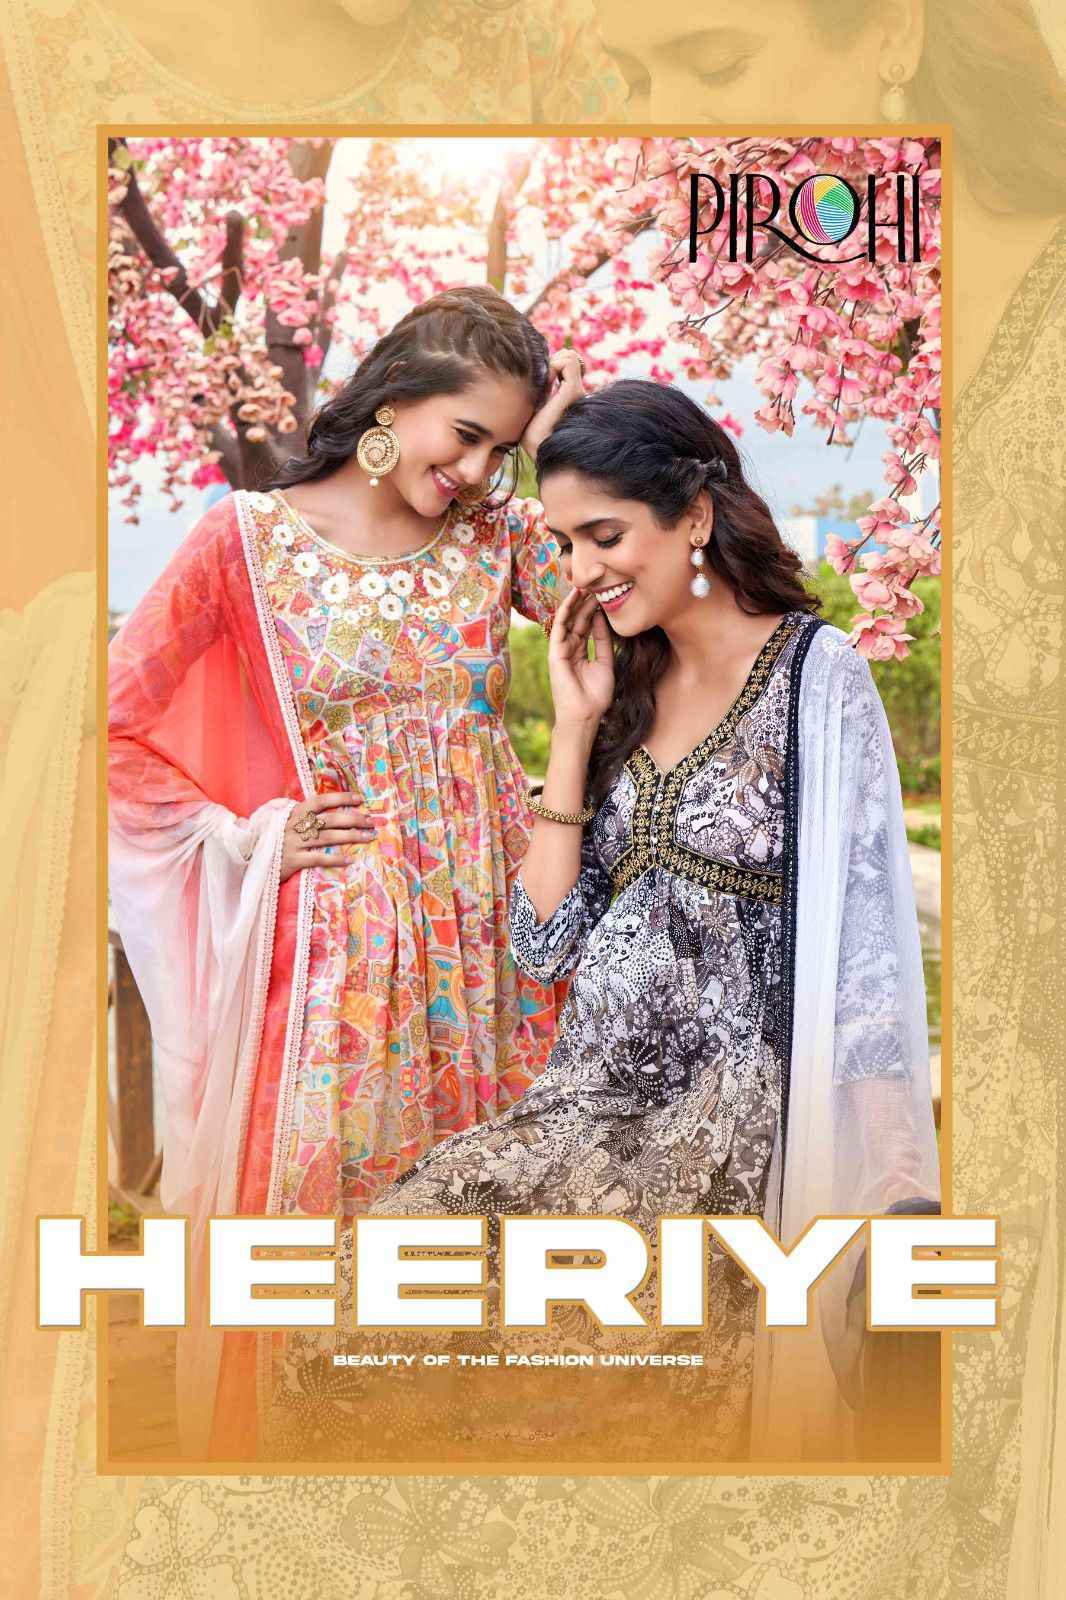 Pirohi Heeriye Readymade Mul Cotton Dress 4 pc Cataloge